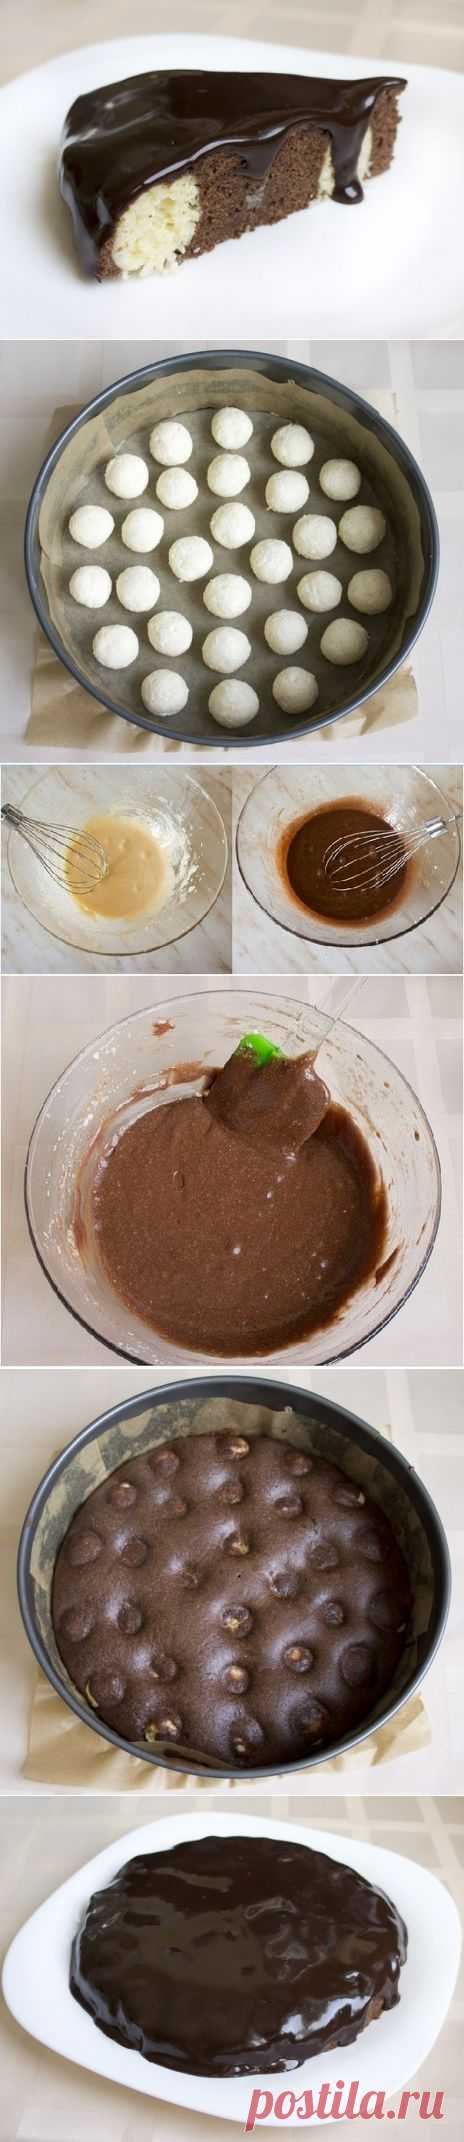 Как приготовить шоколадно - творожный мягкий пирог - рецепт, ингридиенты и фотографии